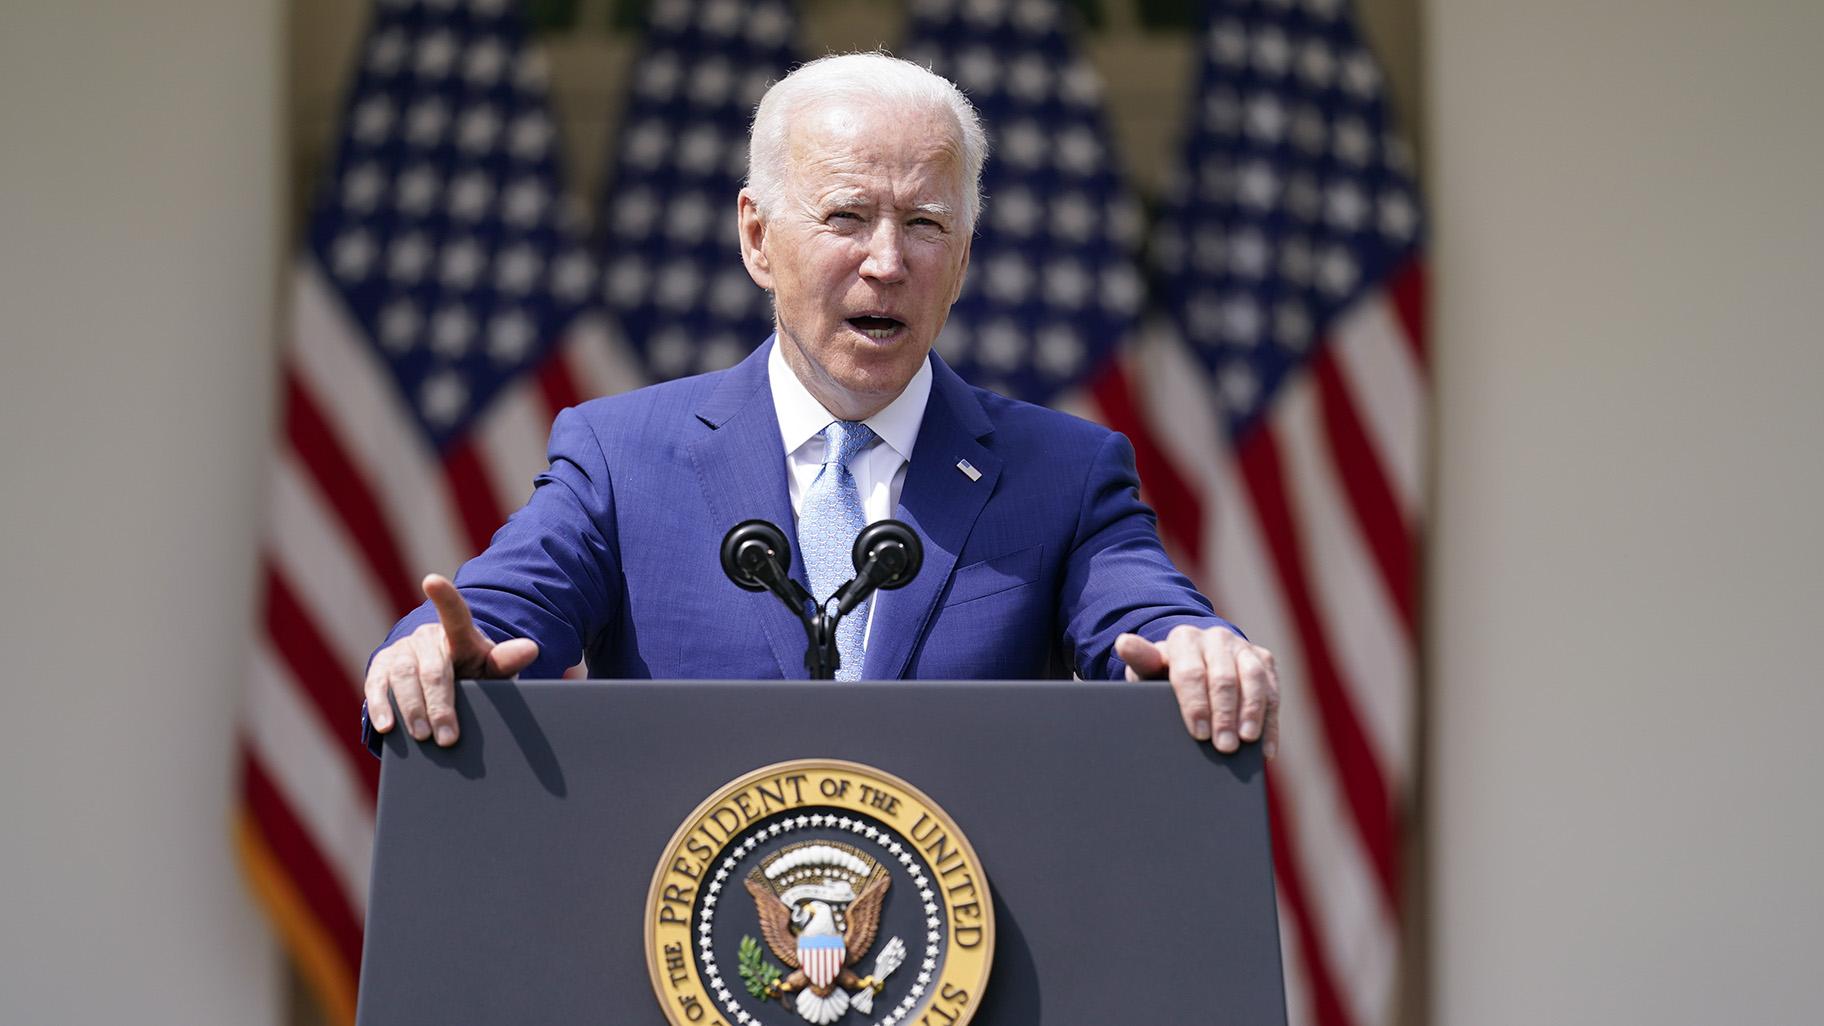 President Joe Biden speaks about gun violence prevention in the Rose Garden at the White House, Thursday, April 8, 2021, in Washington. (AP Photo / Andrew Harnik)